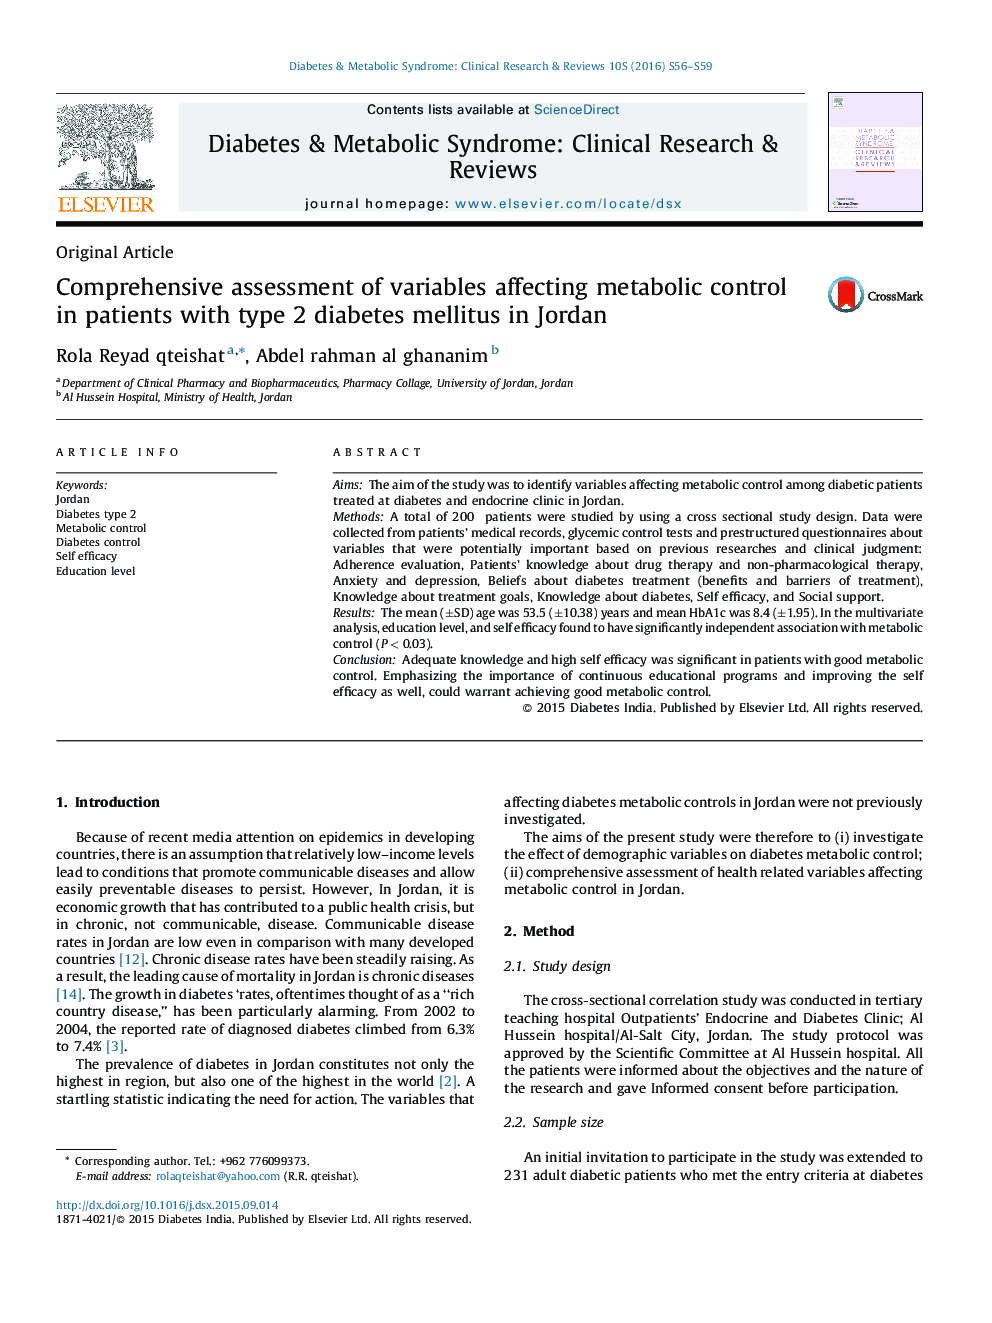 ارزیابی جامع متغیرهای موثر بر کنترل متابولیک در بیماران دیابتی نوع 2 در اردن  